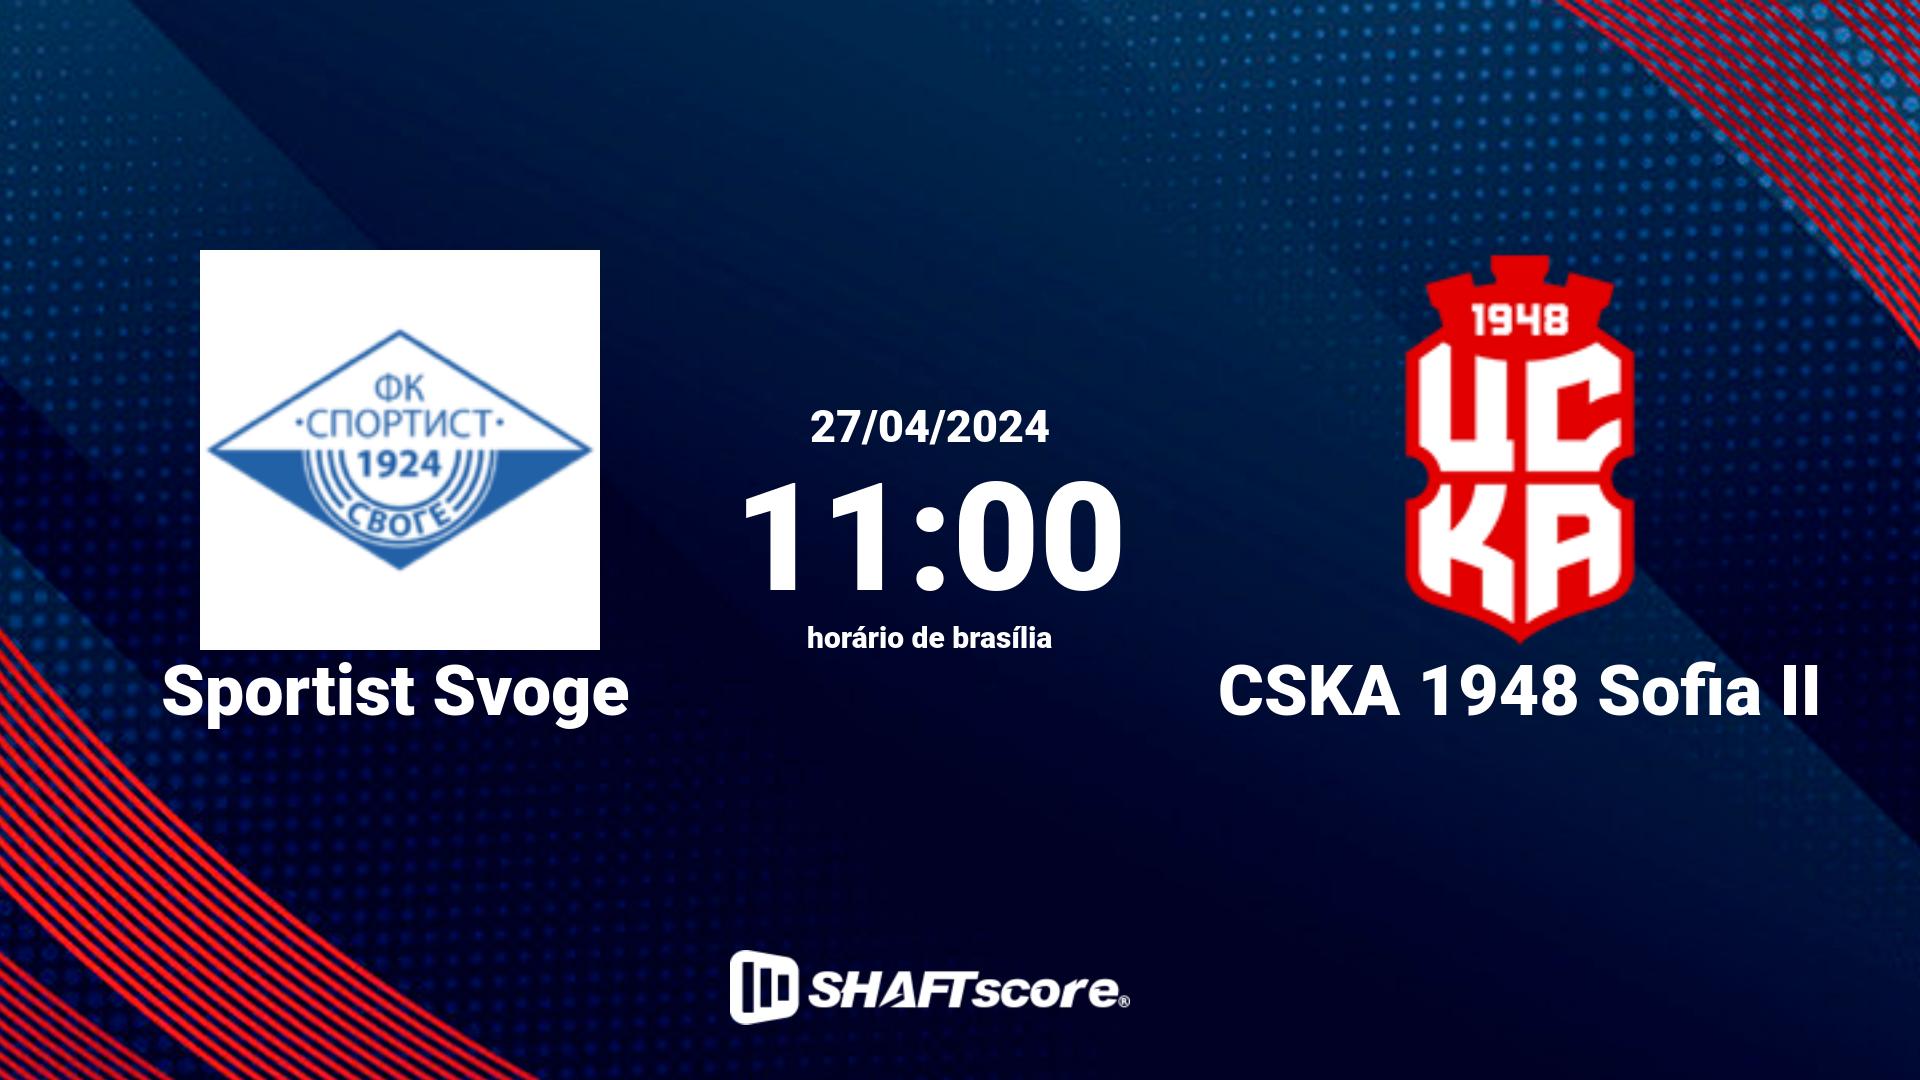 Estatísticas do jogo Sportist Svoge vs CSKA 1948 Sofia II 27.04 11:00